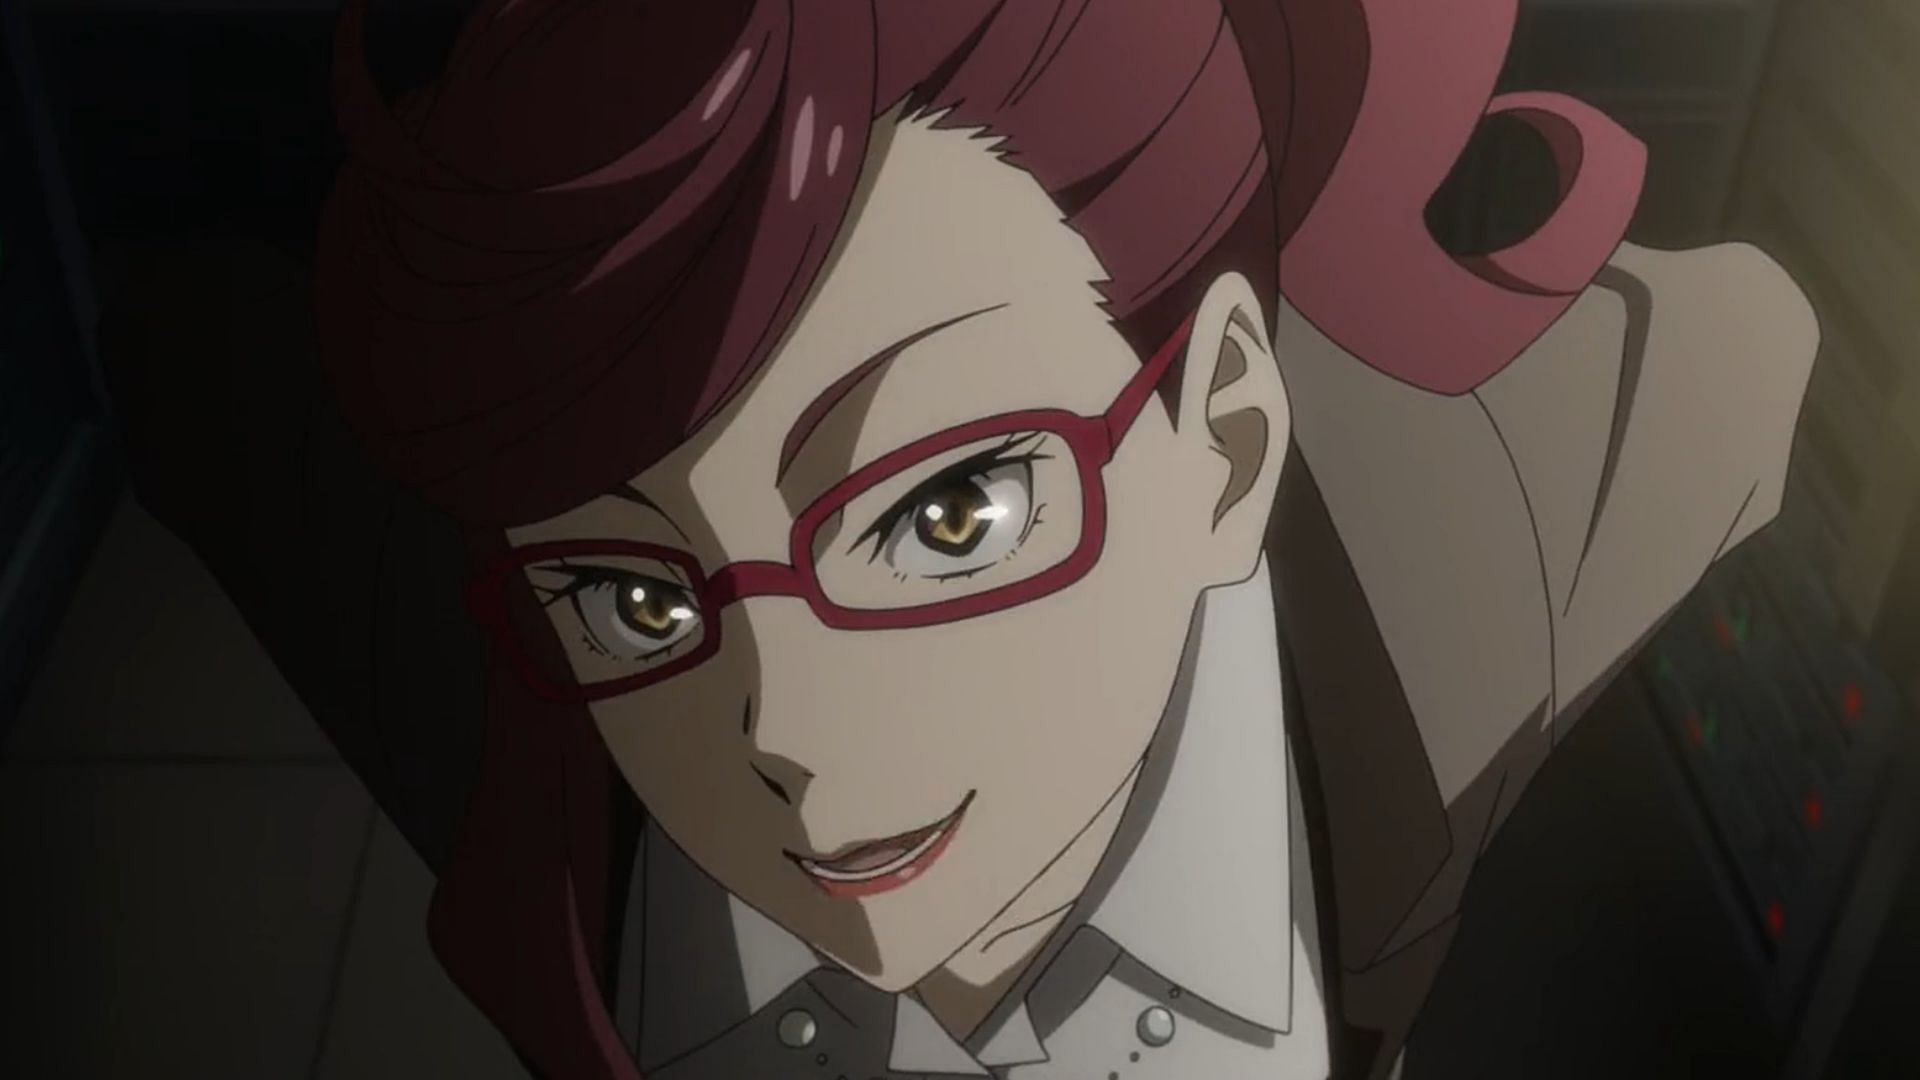 Ms. Egawa as seen in the anime (Image via BONES)